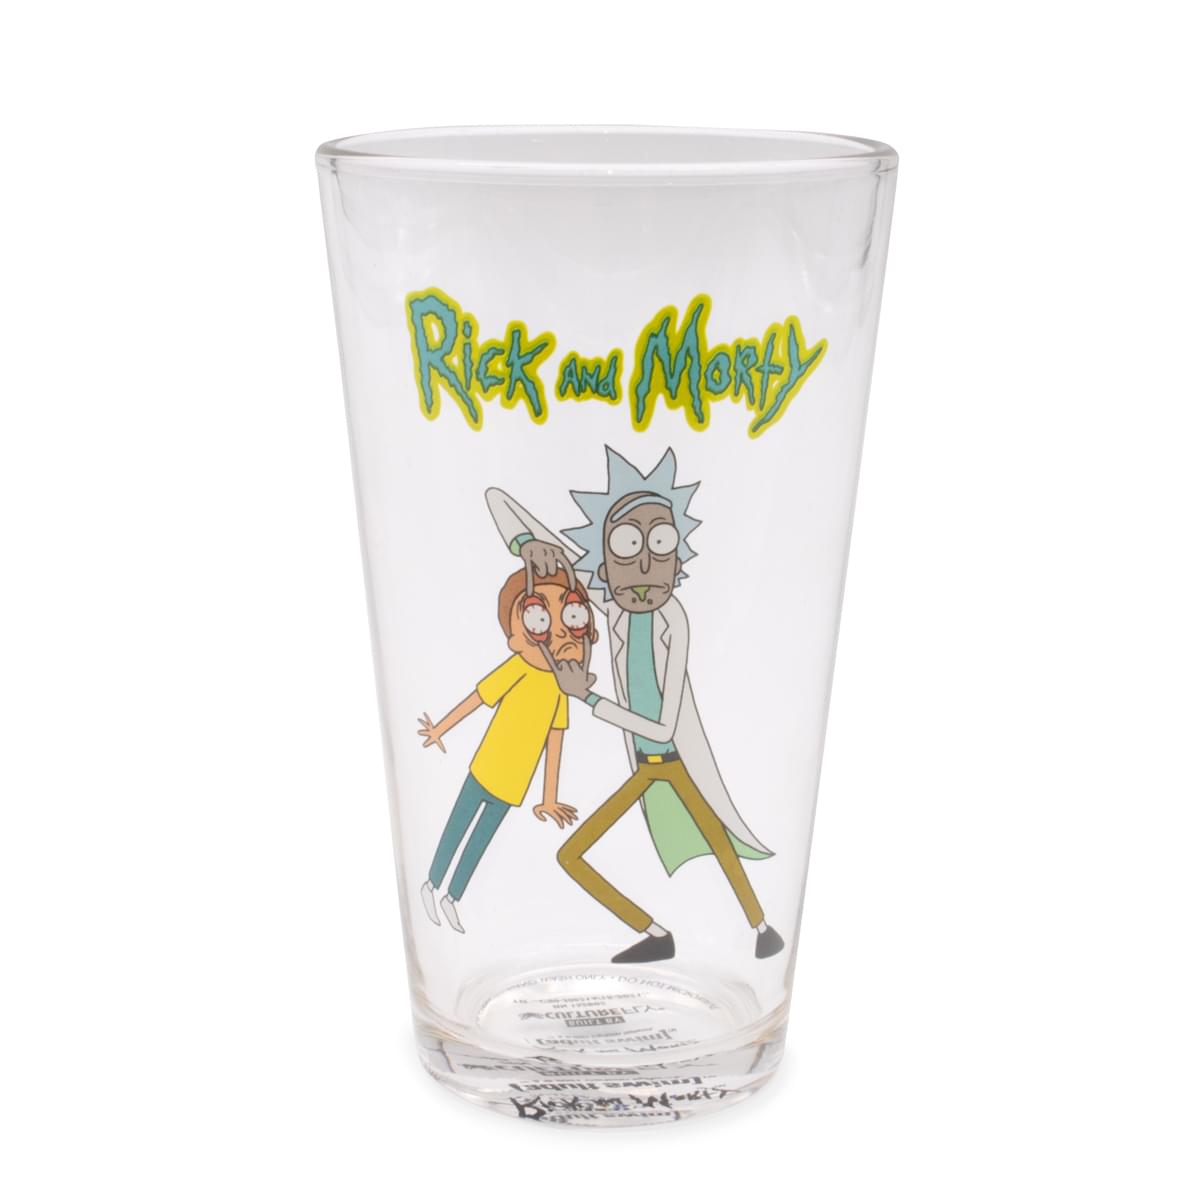 Rick and Morty Pint Glass and Sock Bundle